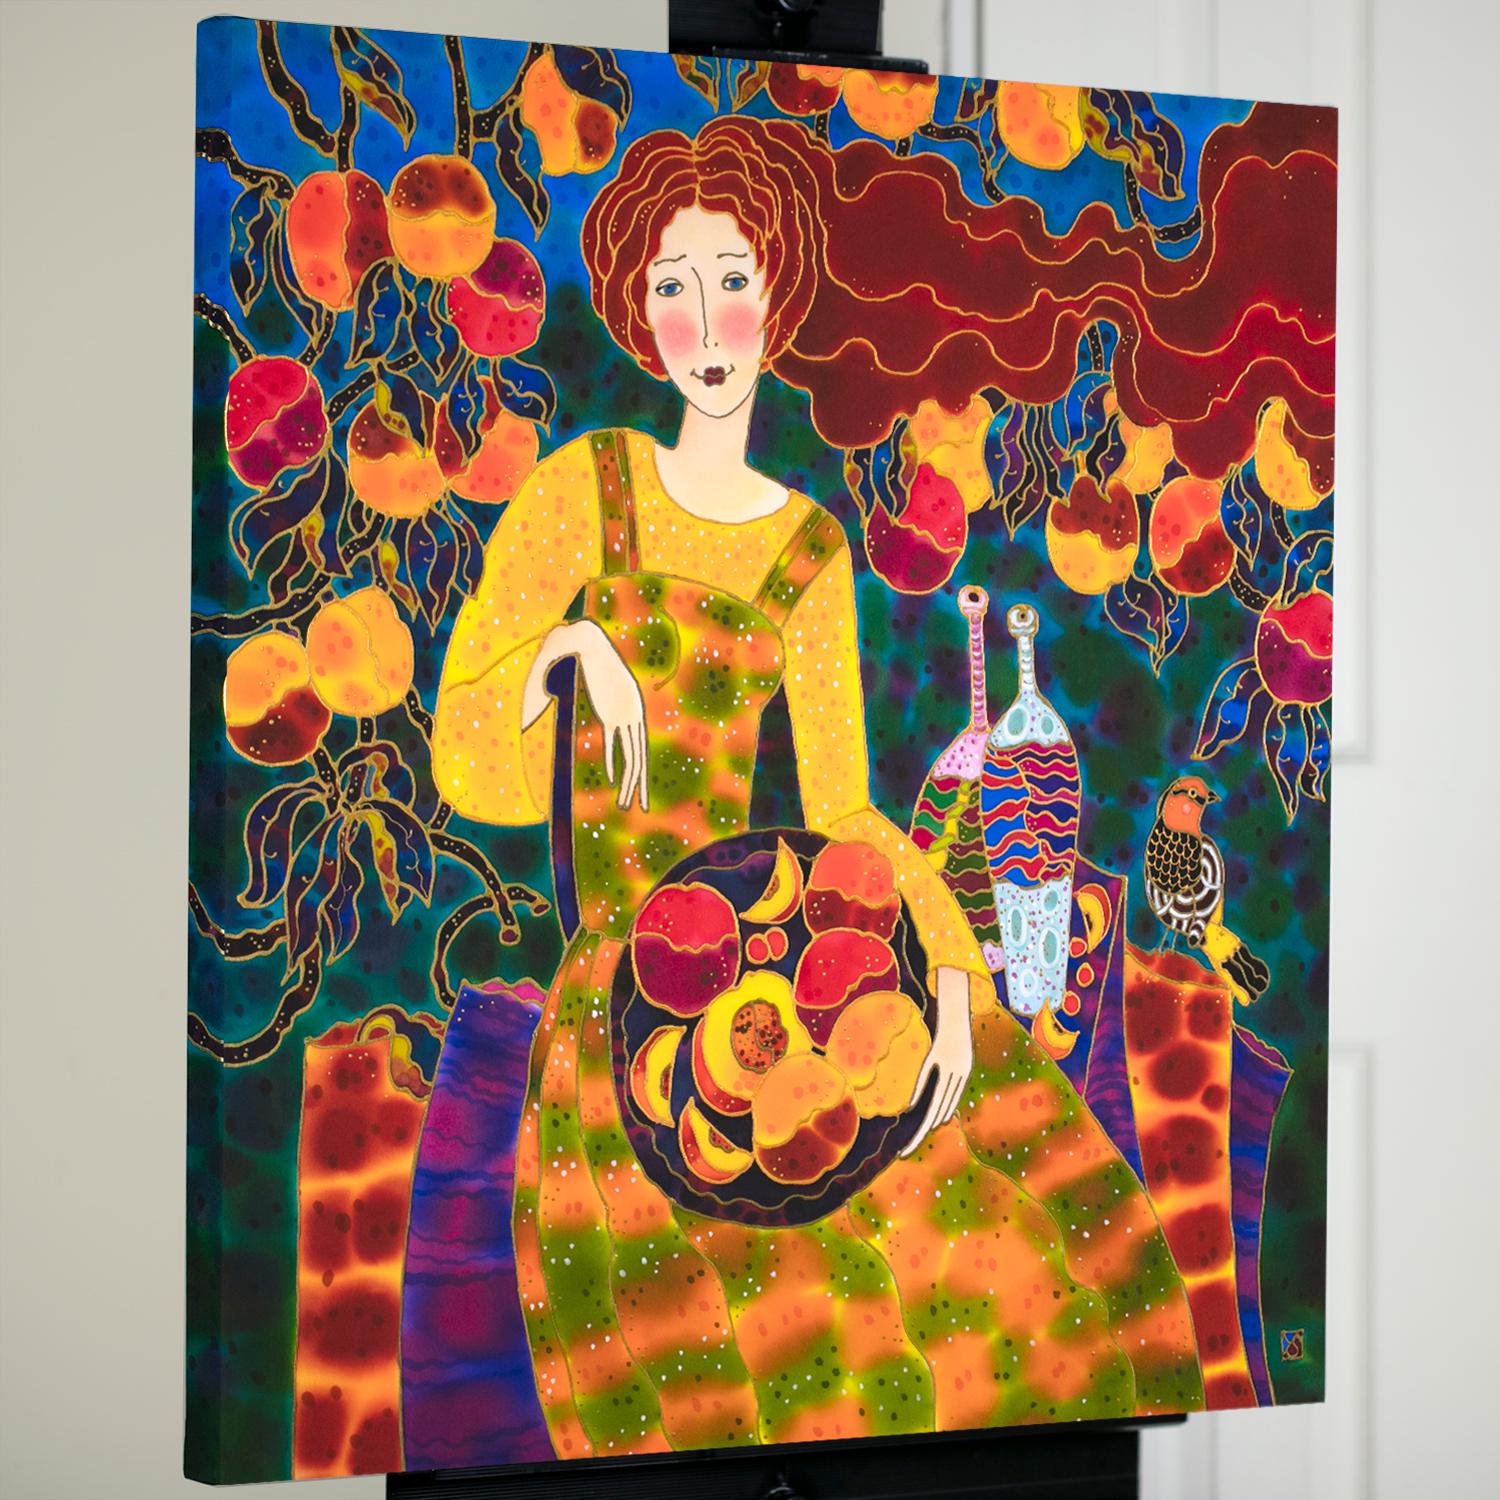 <p>Kommentare des Künstlers<br>Ein rothaariges Mädchen sitzt mit einem Korb voller Pfirsiche da und genießt ihre reiche Ernte. Dieses Kunstwerk ist Teil der Serie Figurative der Künstlerin Yelena Sidorova, die für ihre leuchtenden Herbstfarben